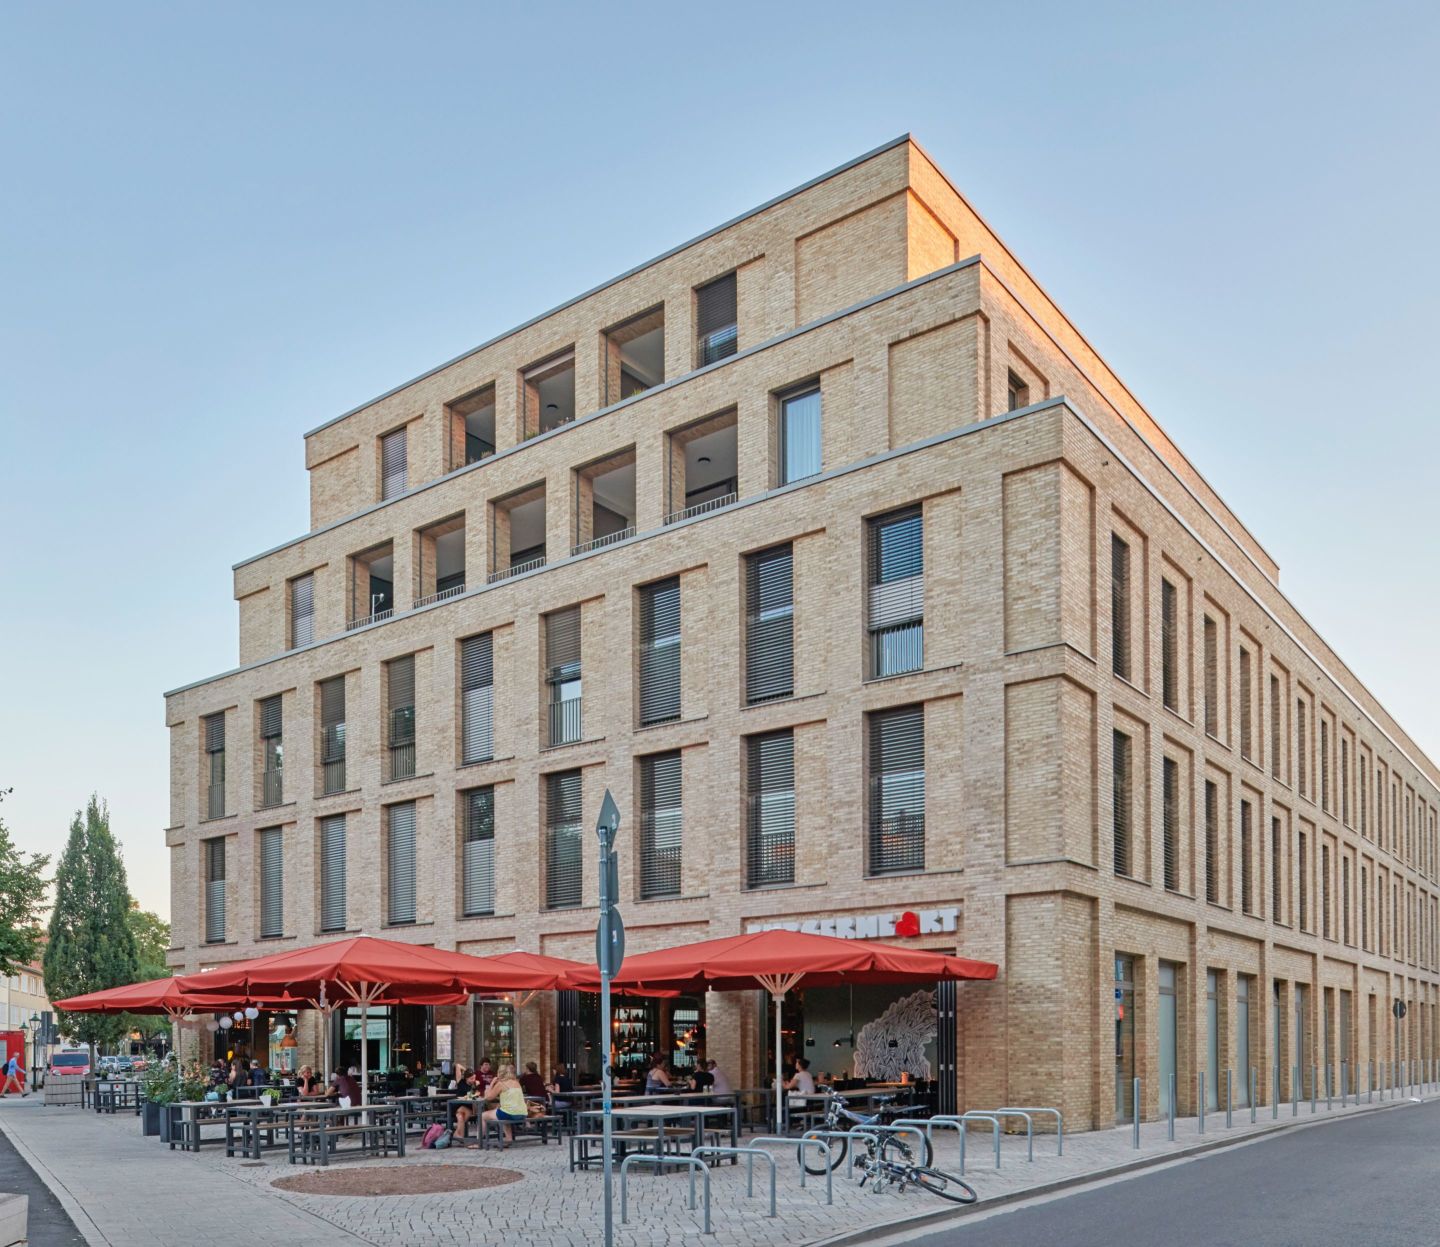 Bild: Das Gebäude MARQ auf dem Marstallplatz in Hannover mit Außen-Gastronomie.